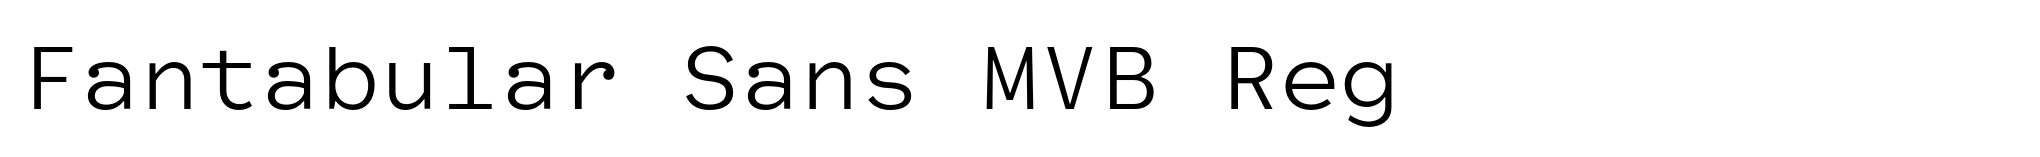 Fantabular Sans MVB Reg image